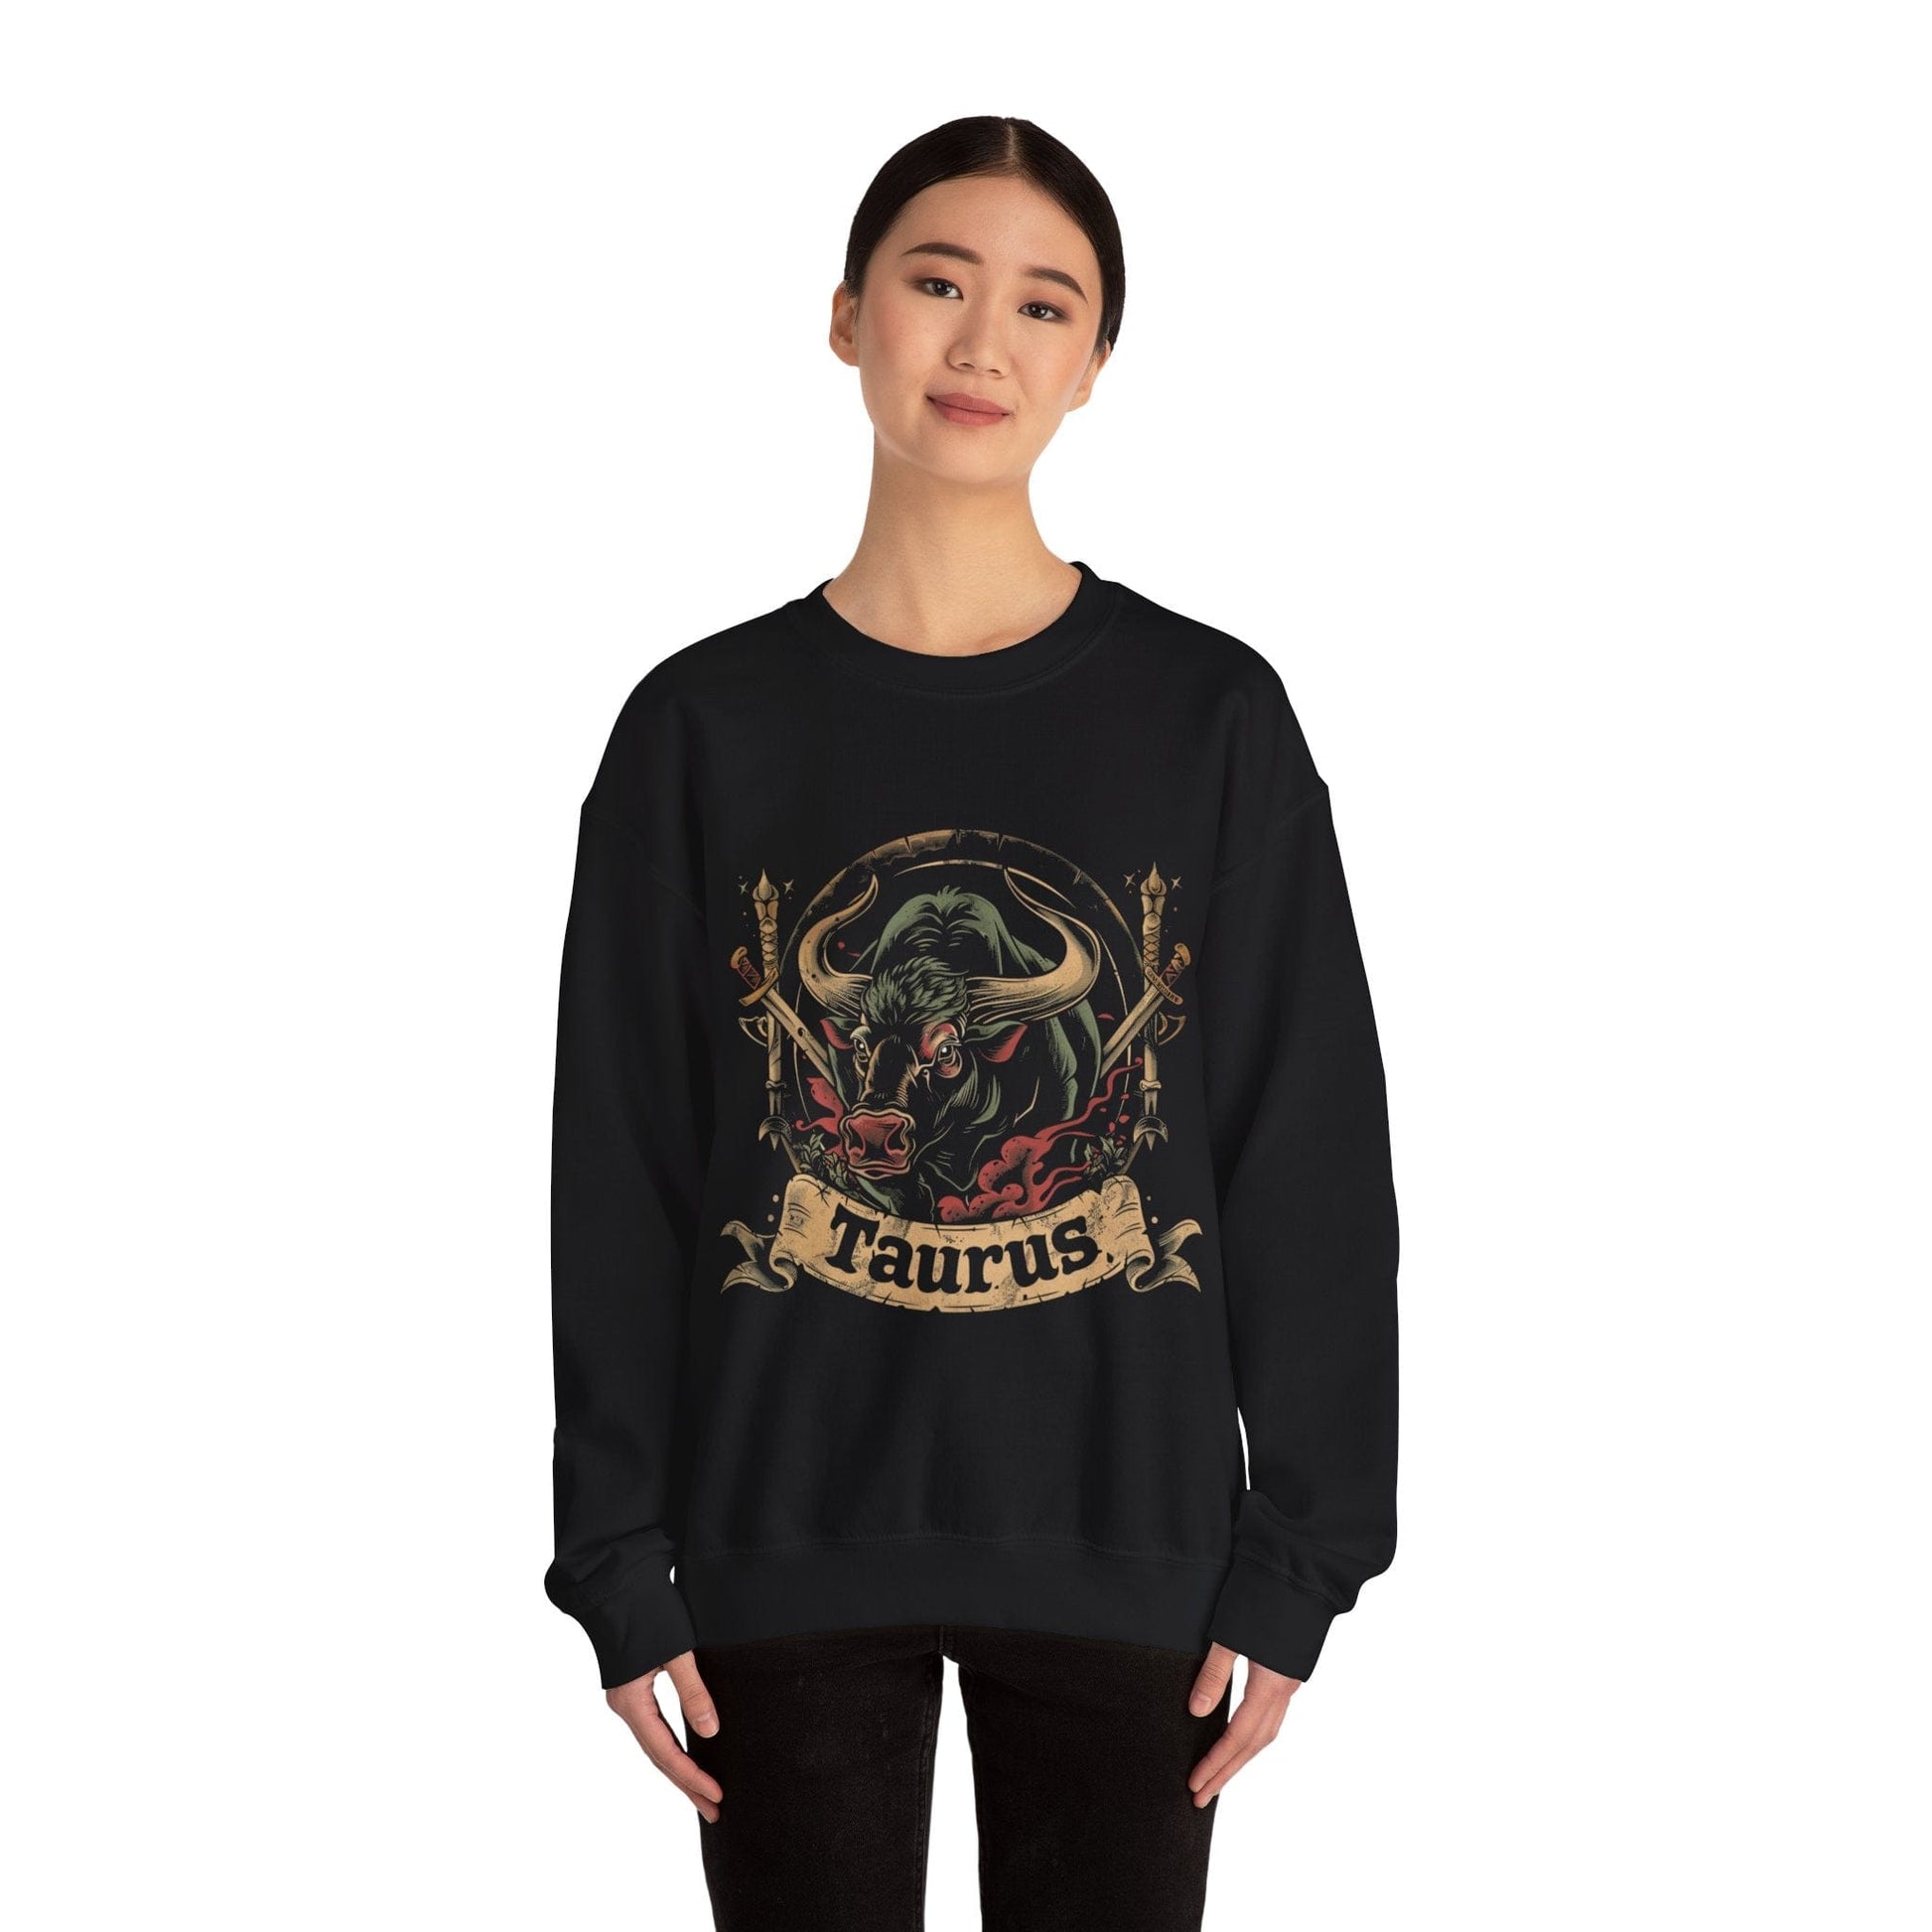 Sweatshirt Taurus Warrior Crest Sweater: Valor in Threads